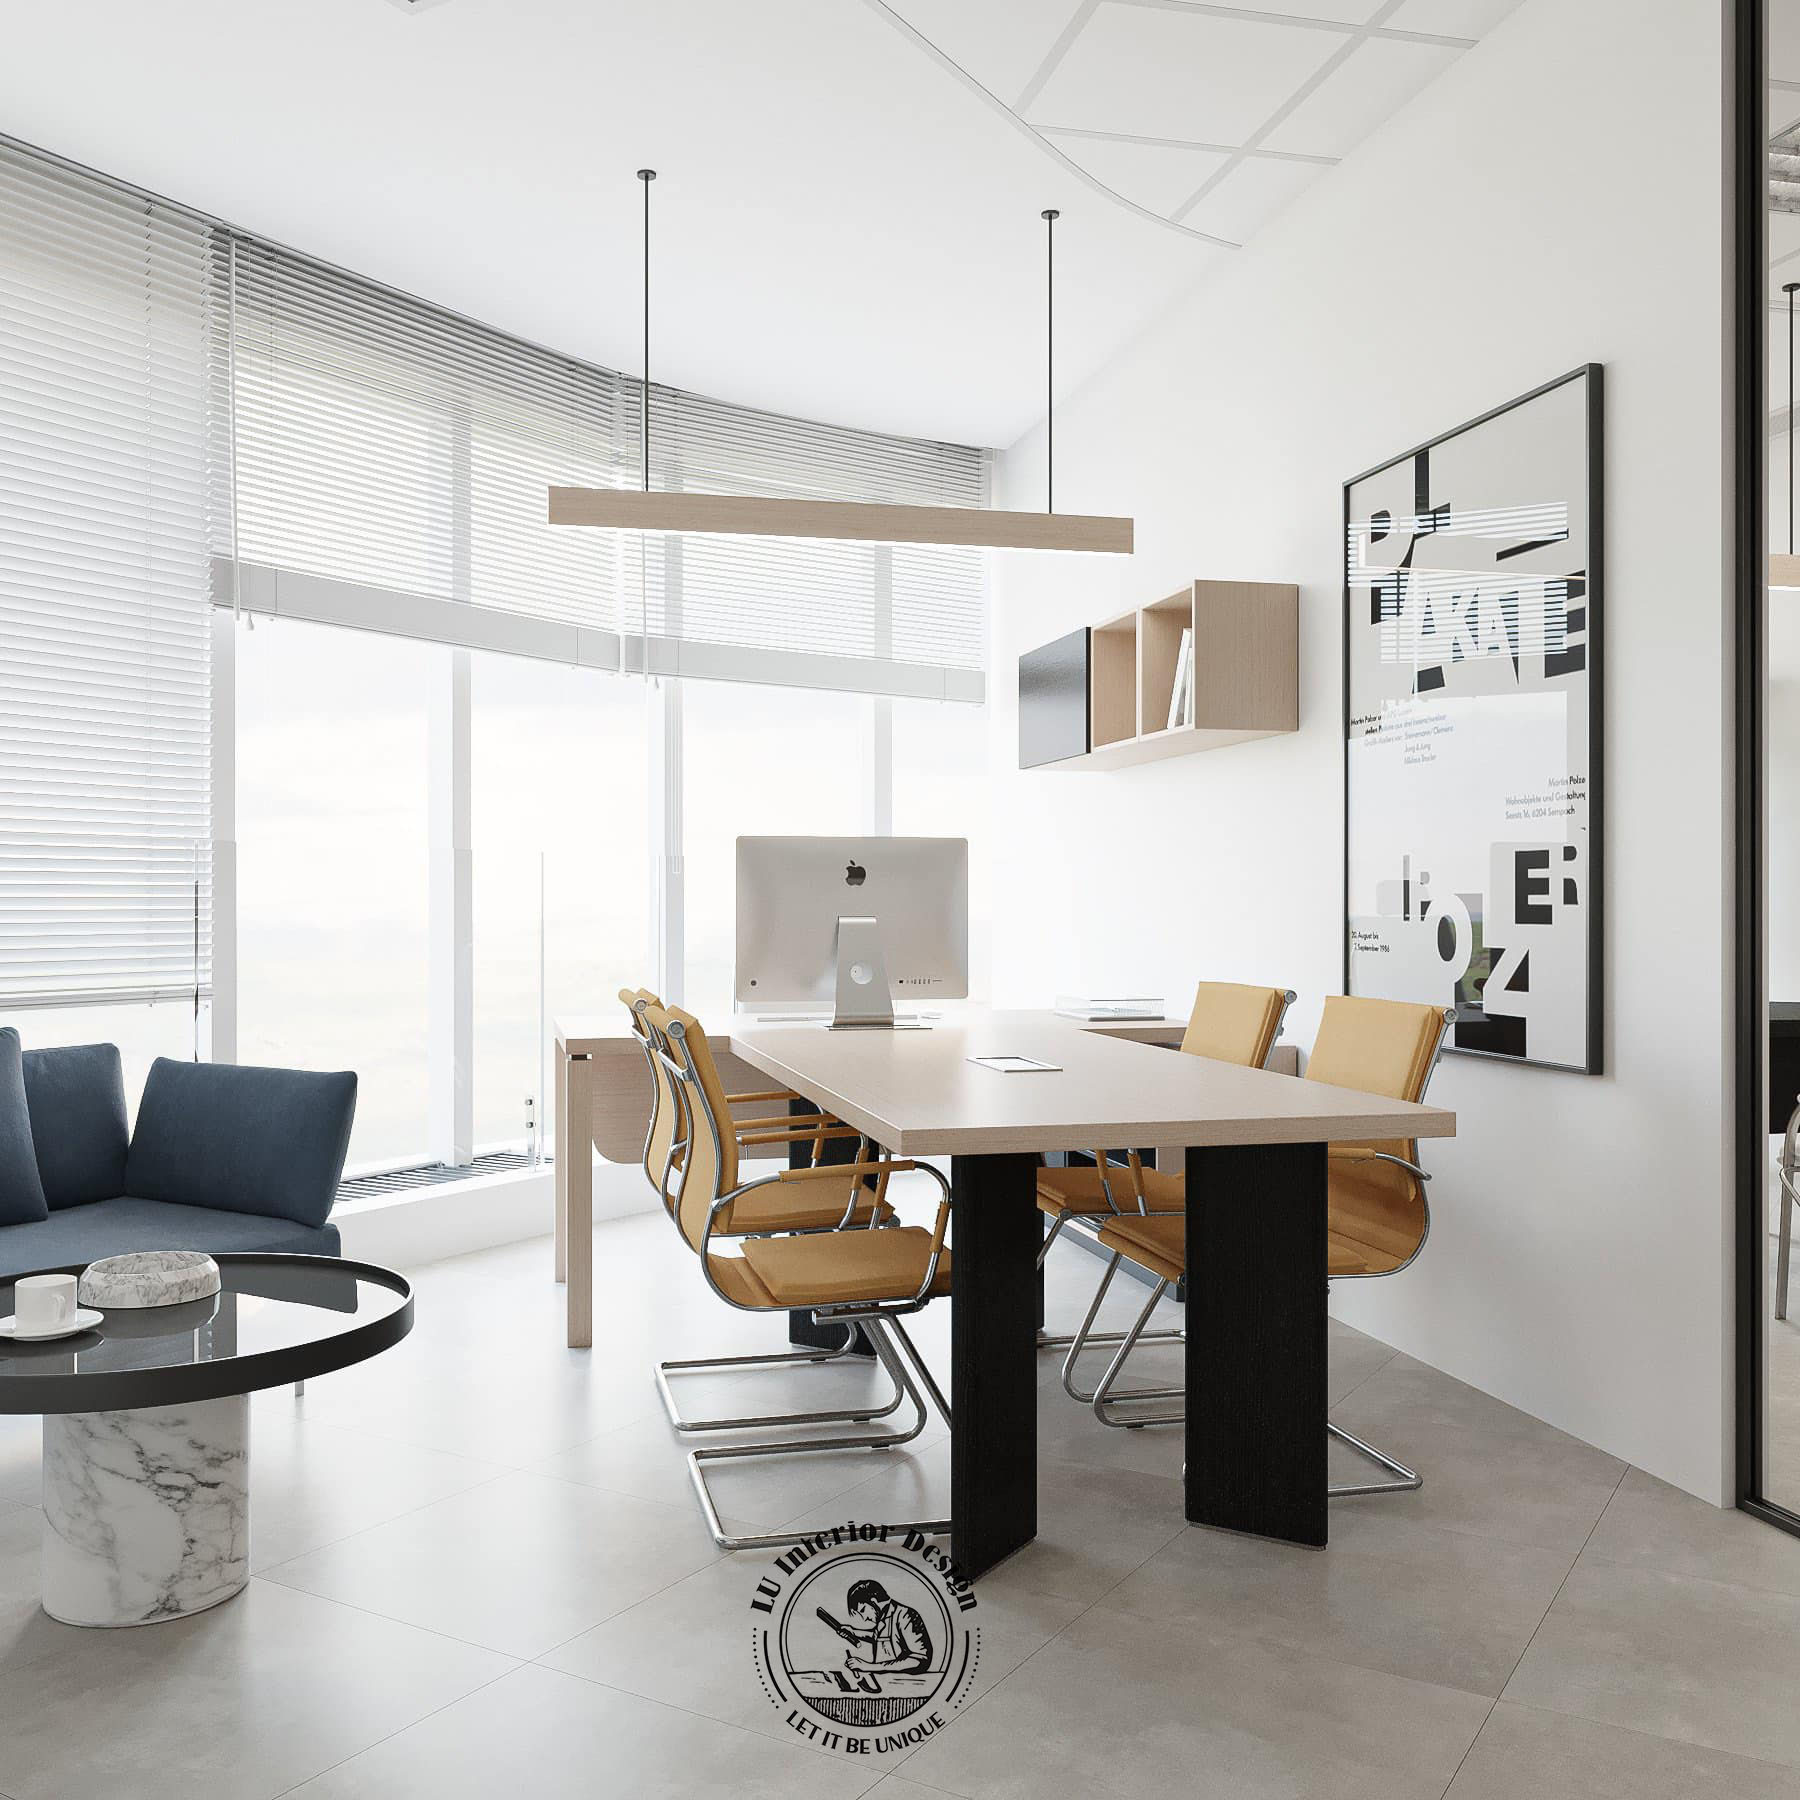 Quá trình thi công nội thất văn phòng tỉ mỉ đạt giá trị thẩm mỹ cao | Dự án Thiên Long - LU Design thực hiện.